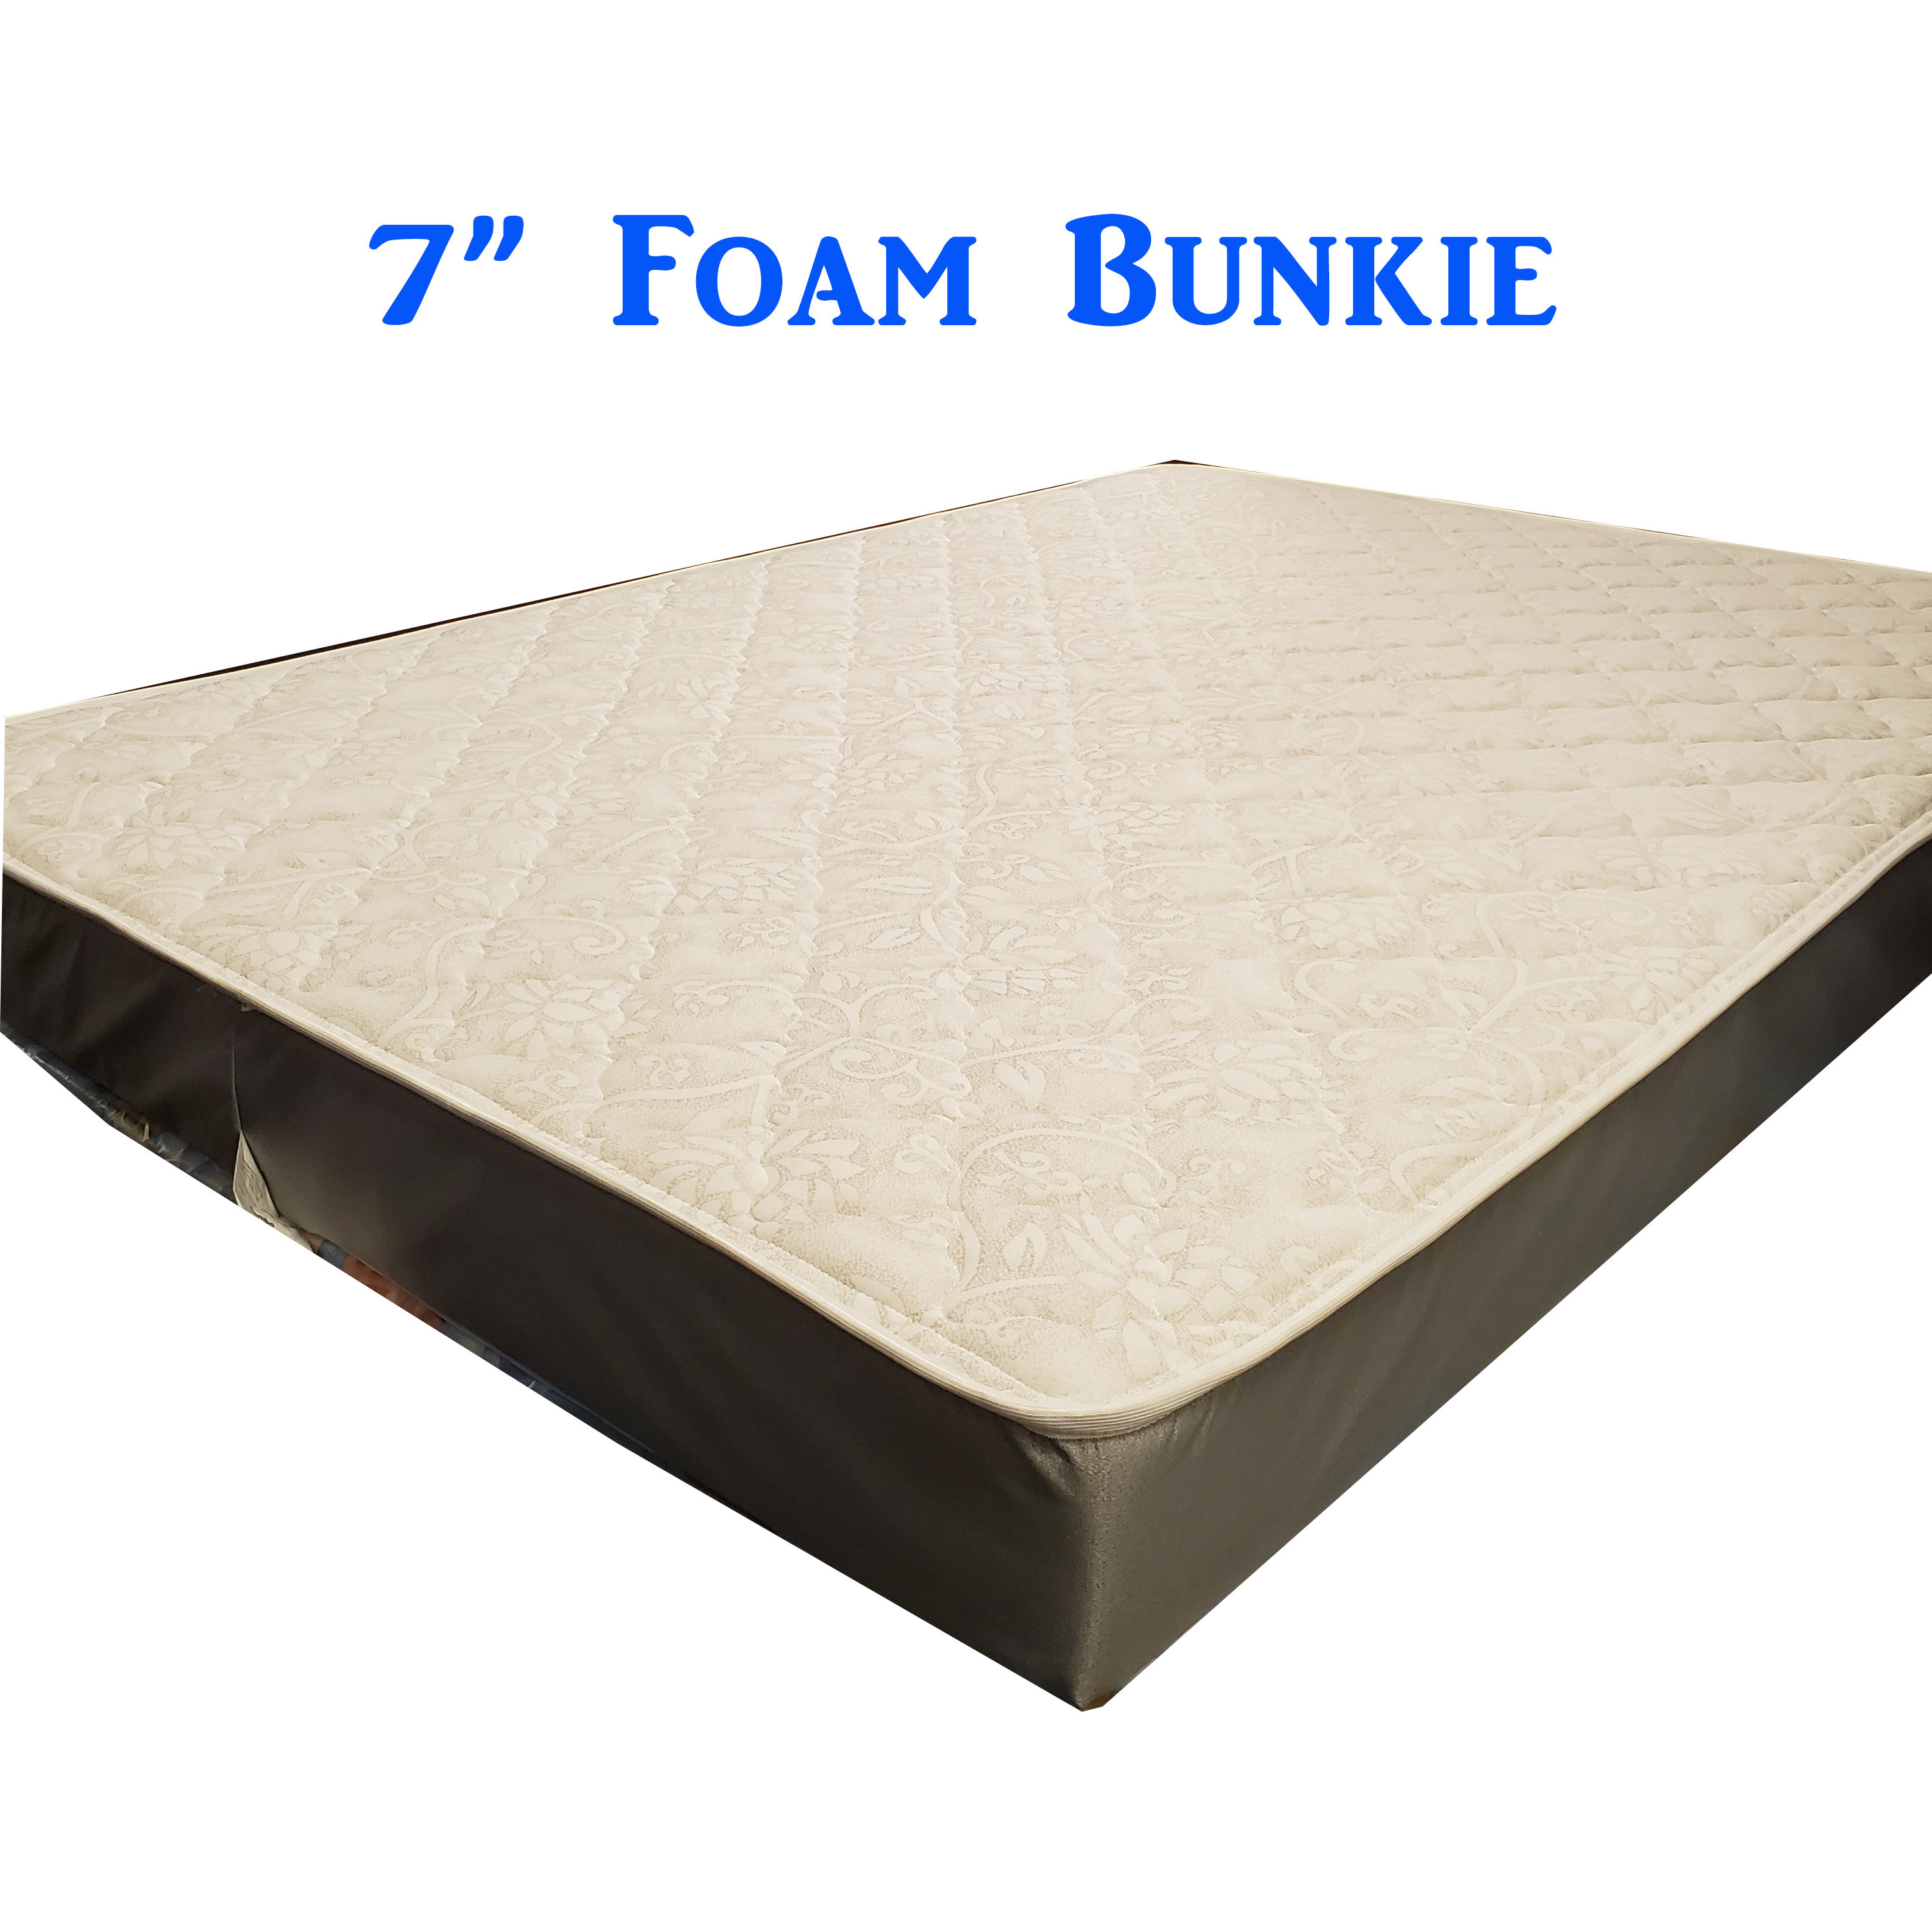 - Foam Bunkie 7